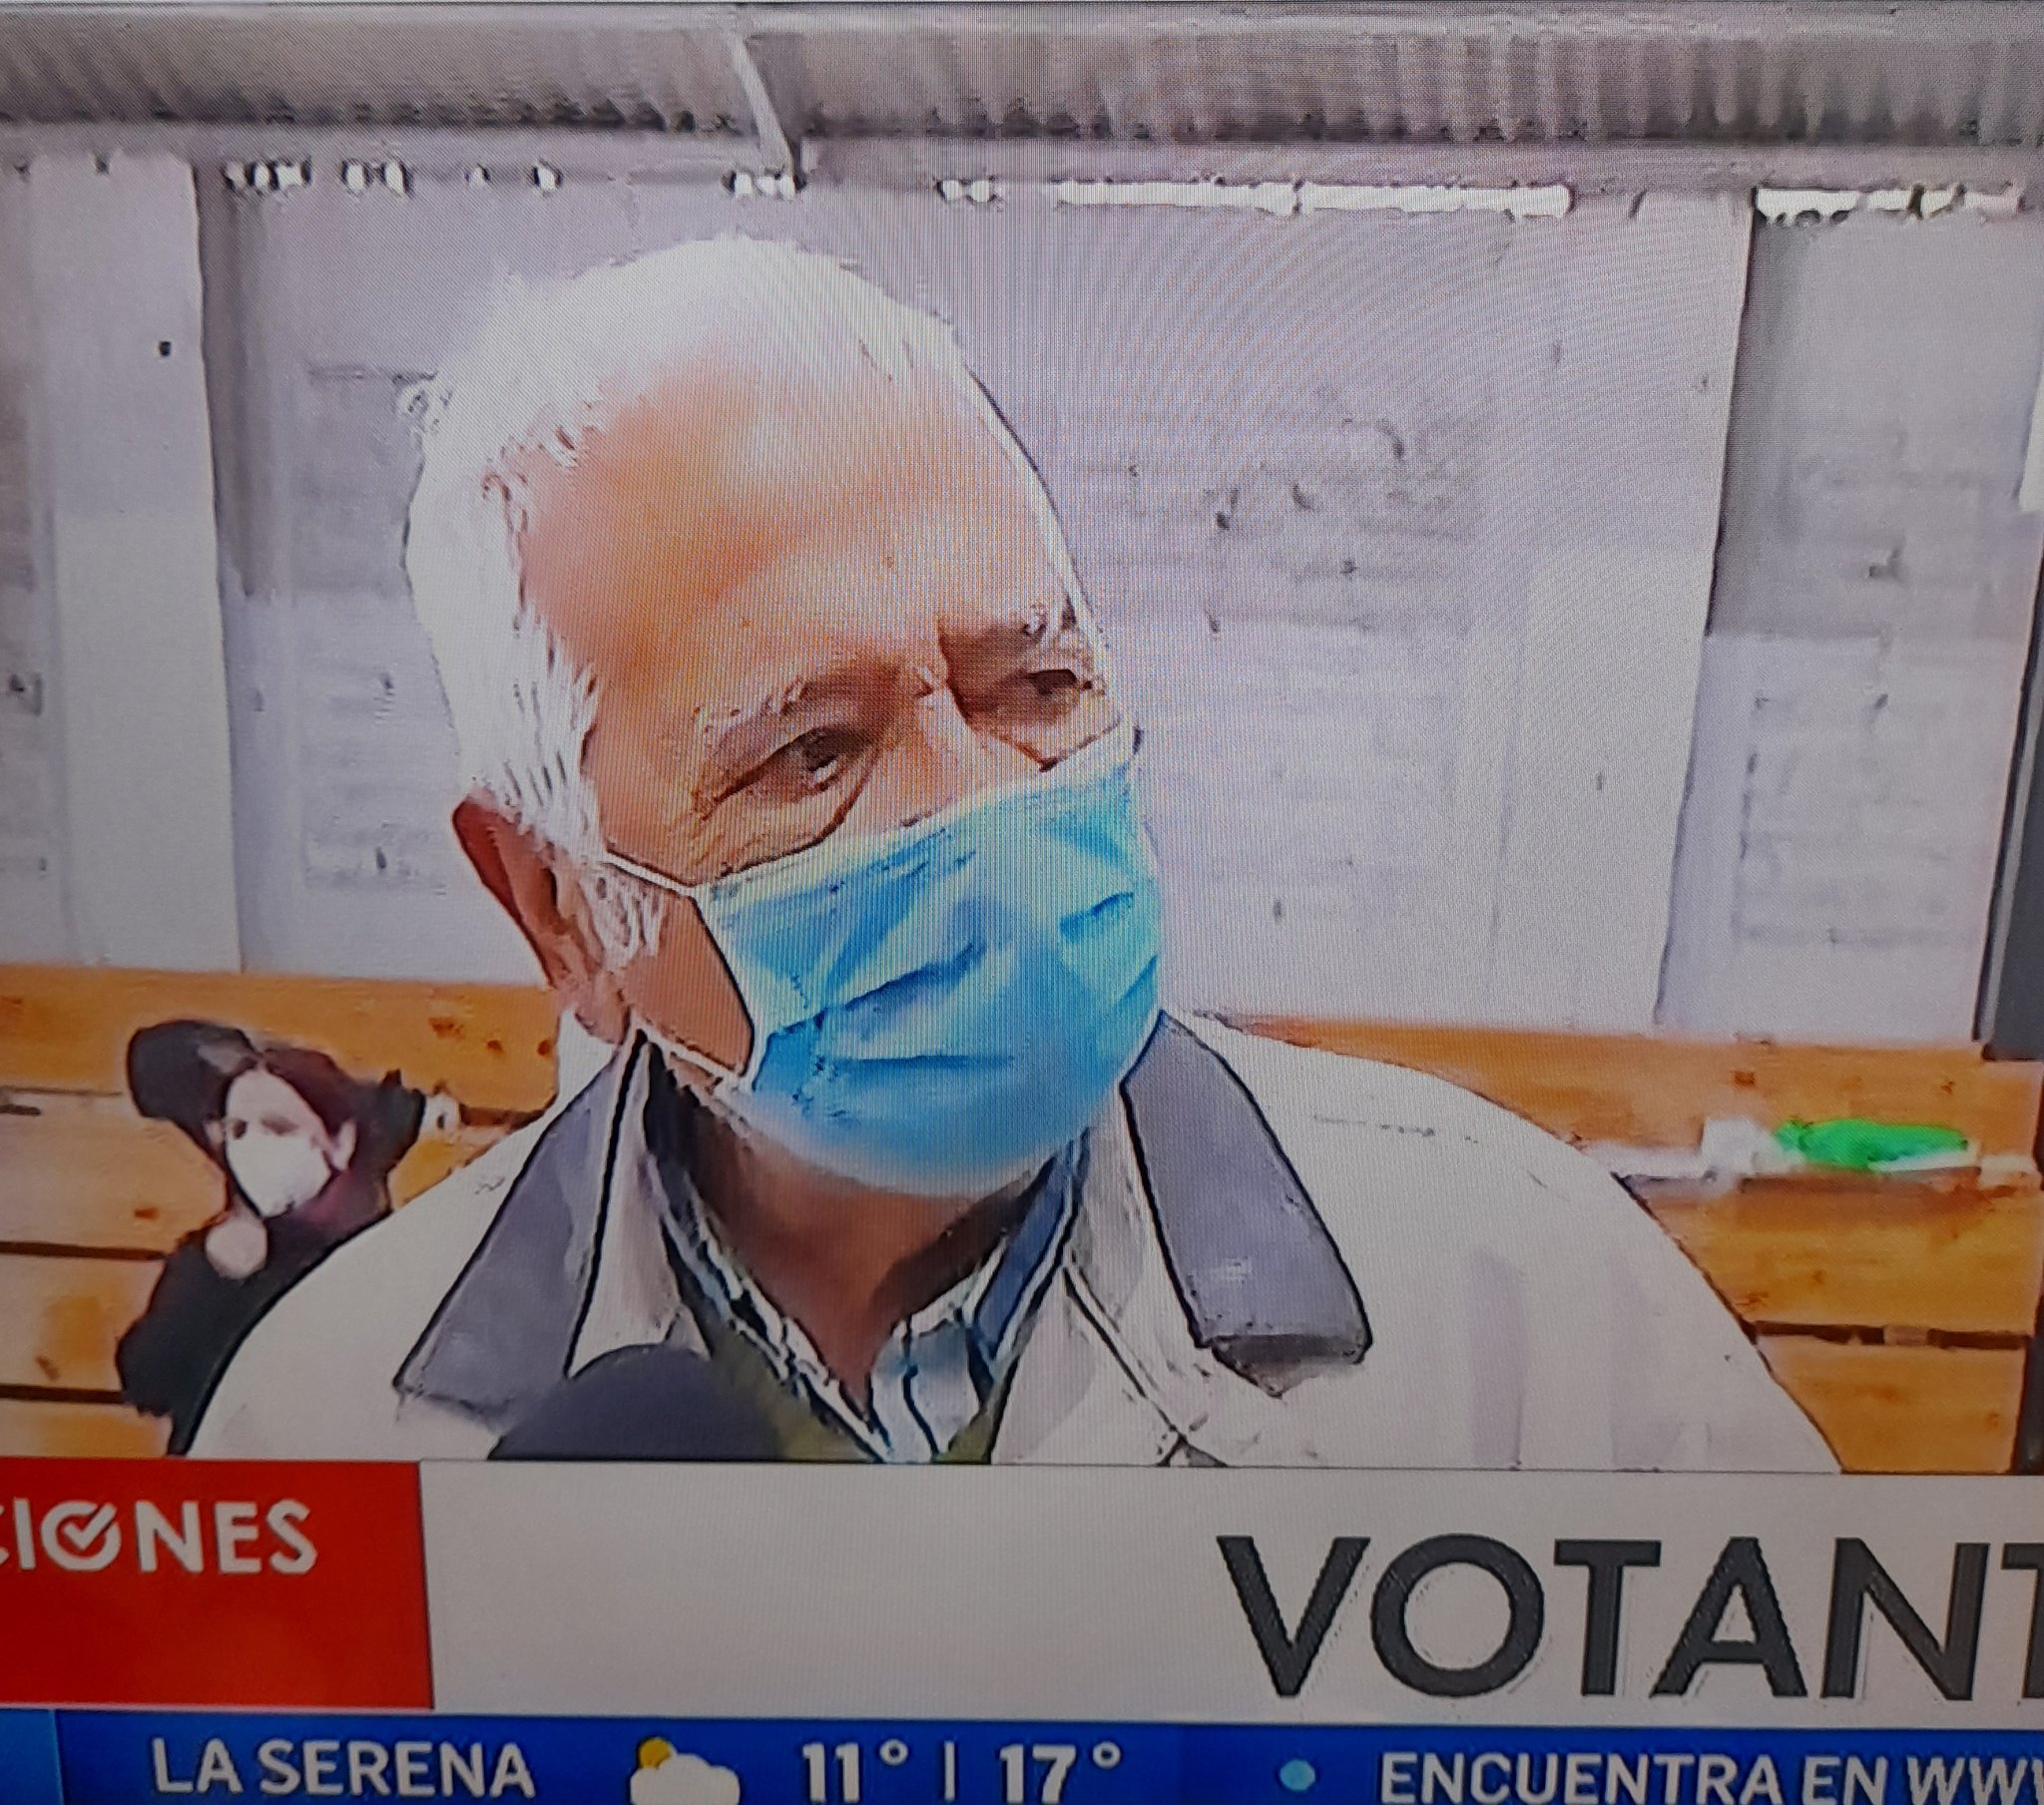 Don Sergio, votante de 91 años genera aplausos en las redes: “Ya tengo las dos vacunas, fuera de todas las vacunas que me han metido los políticos, parece que entre más grande es el cargo, peor es la vacuna»